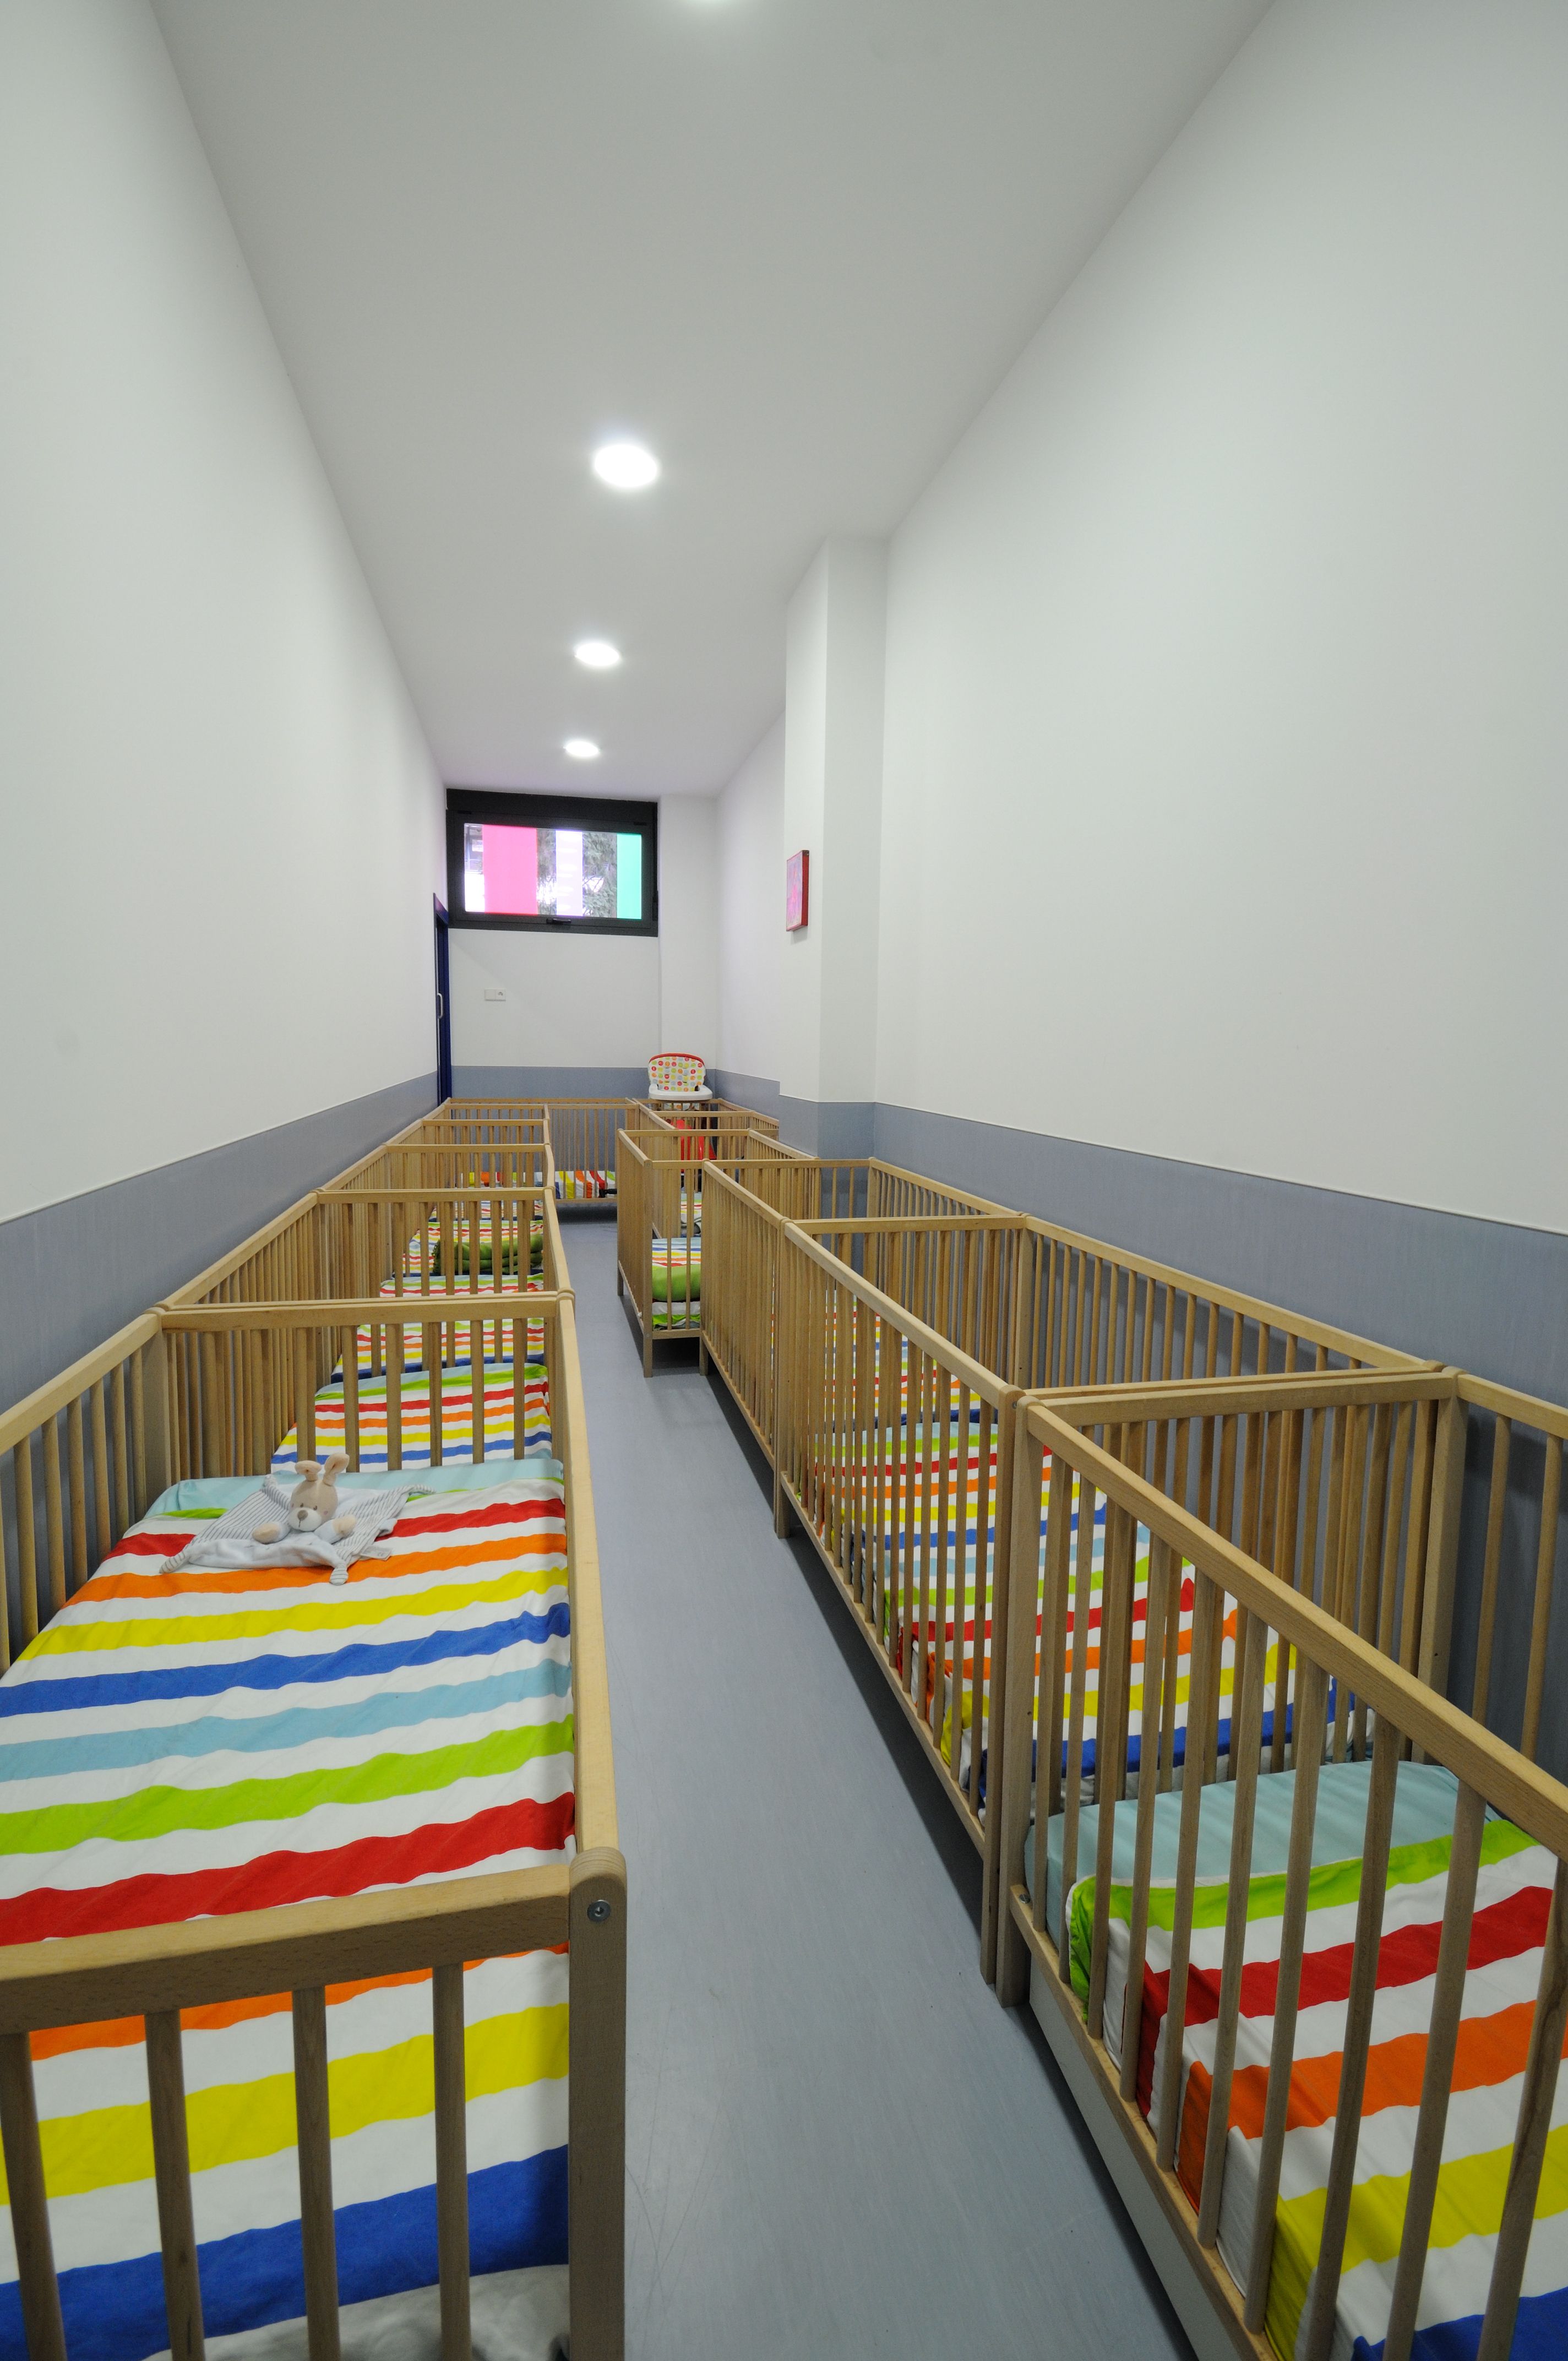 Foto 2 de Guarderías y Escuelas infantiles en Pamplona | Baby School